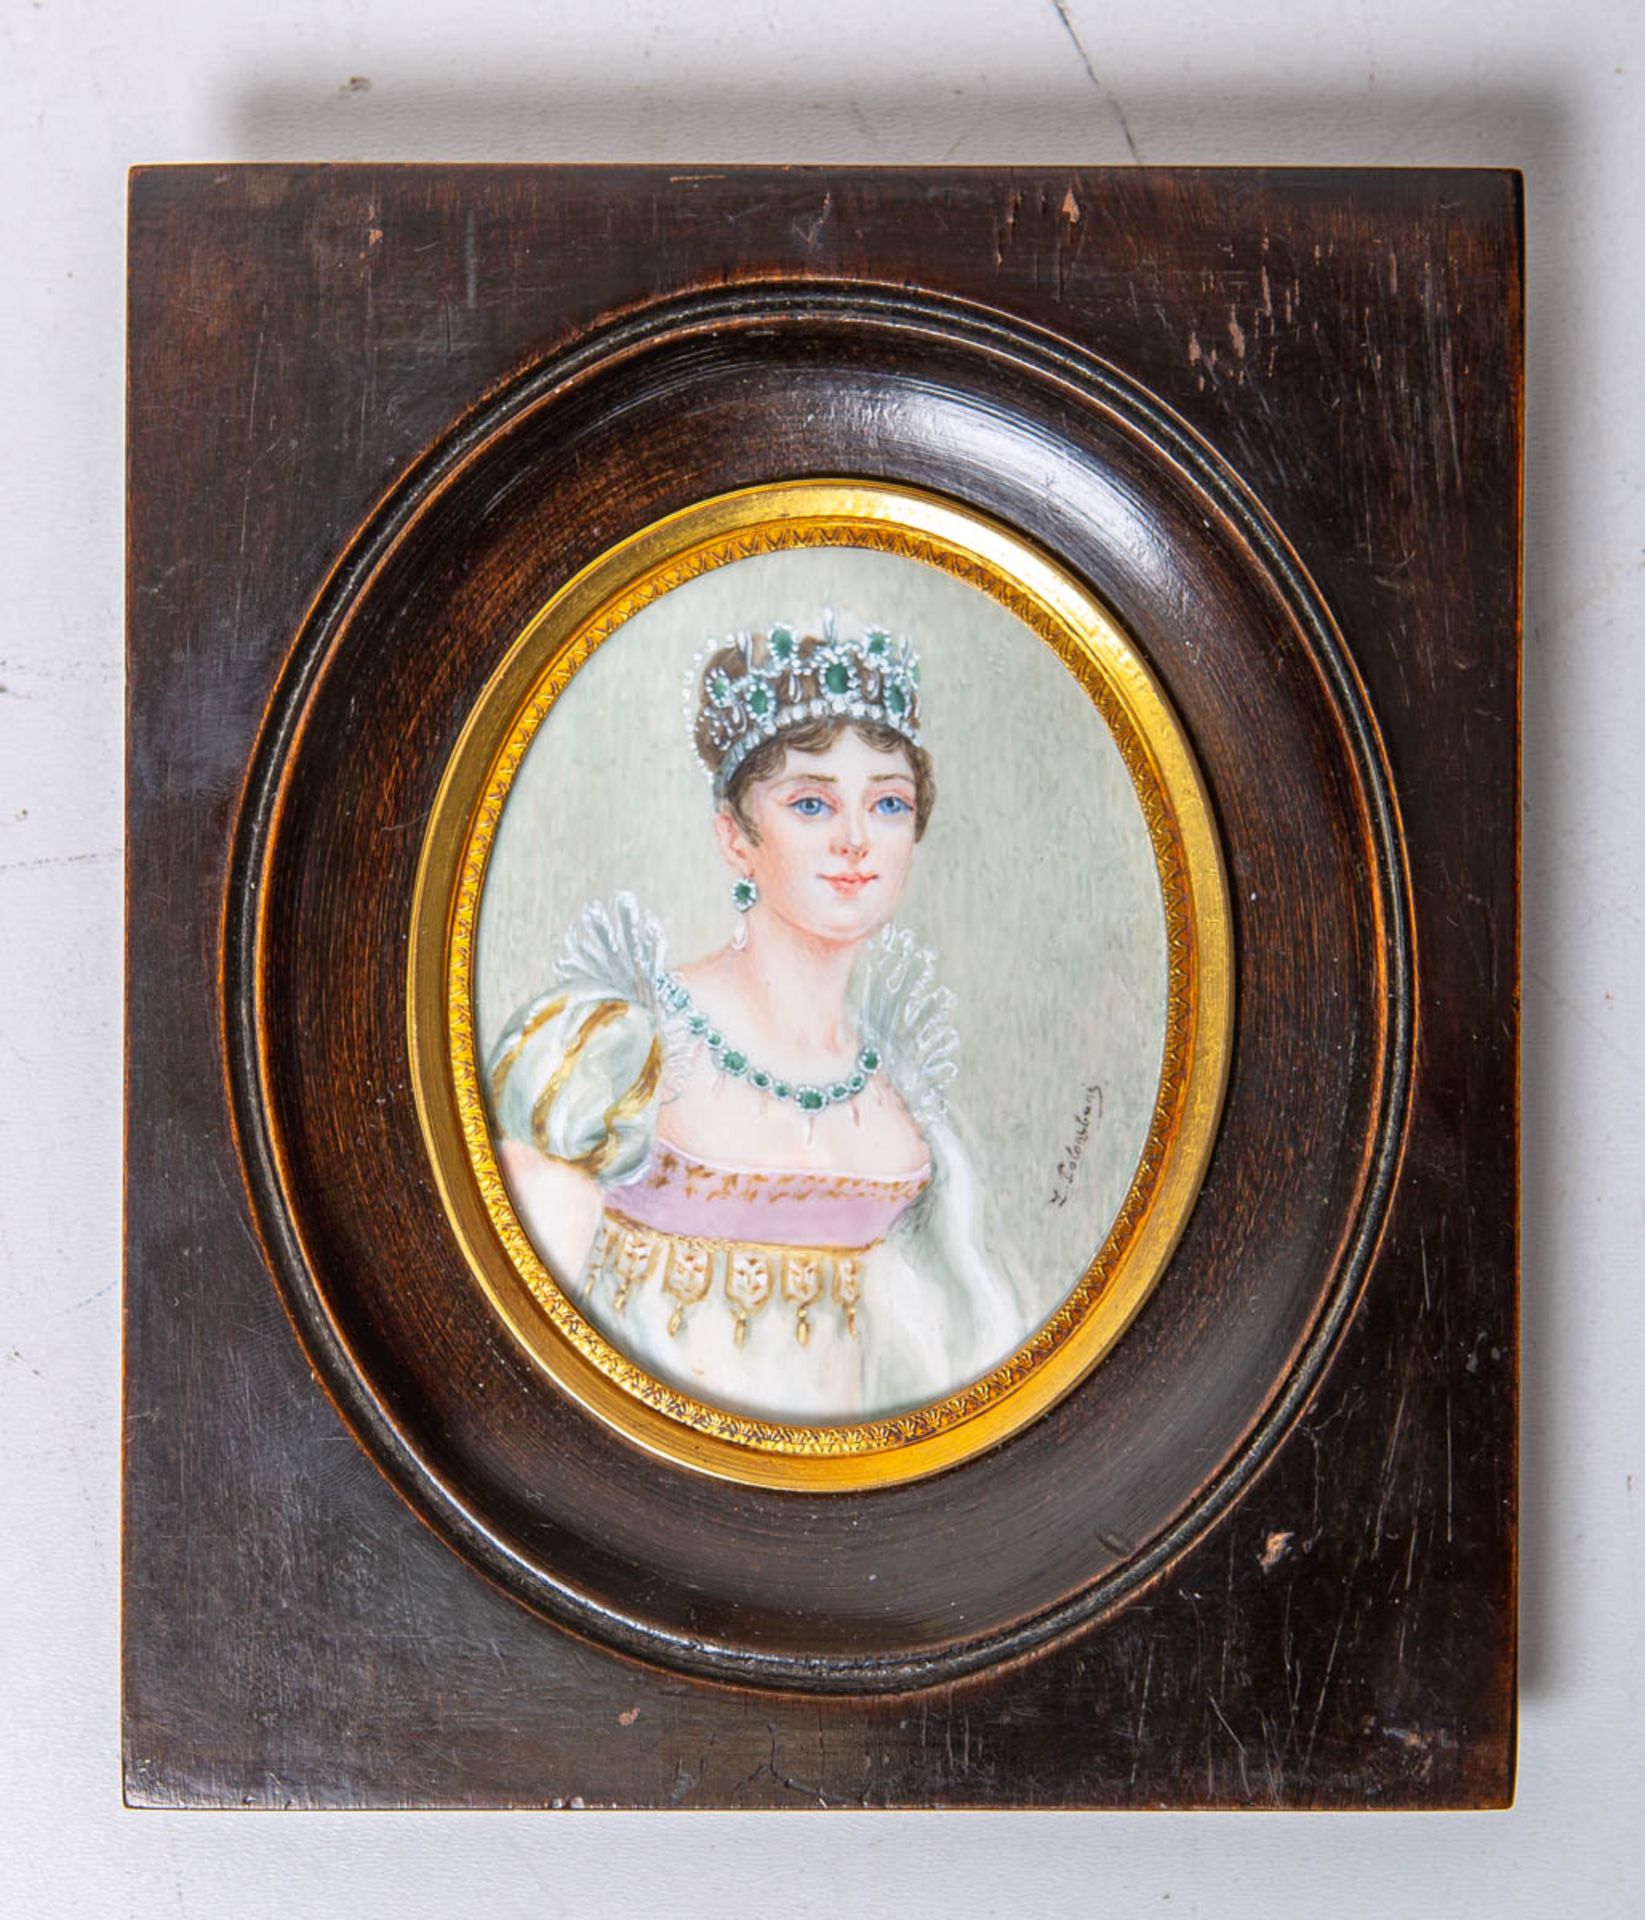 Colombani, L. (wohl 19. Jh.), Portrait einer jungen Dame m. reichem Schmuck u. Krone (wohl um 1850)